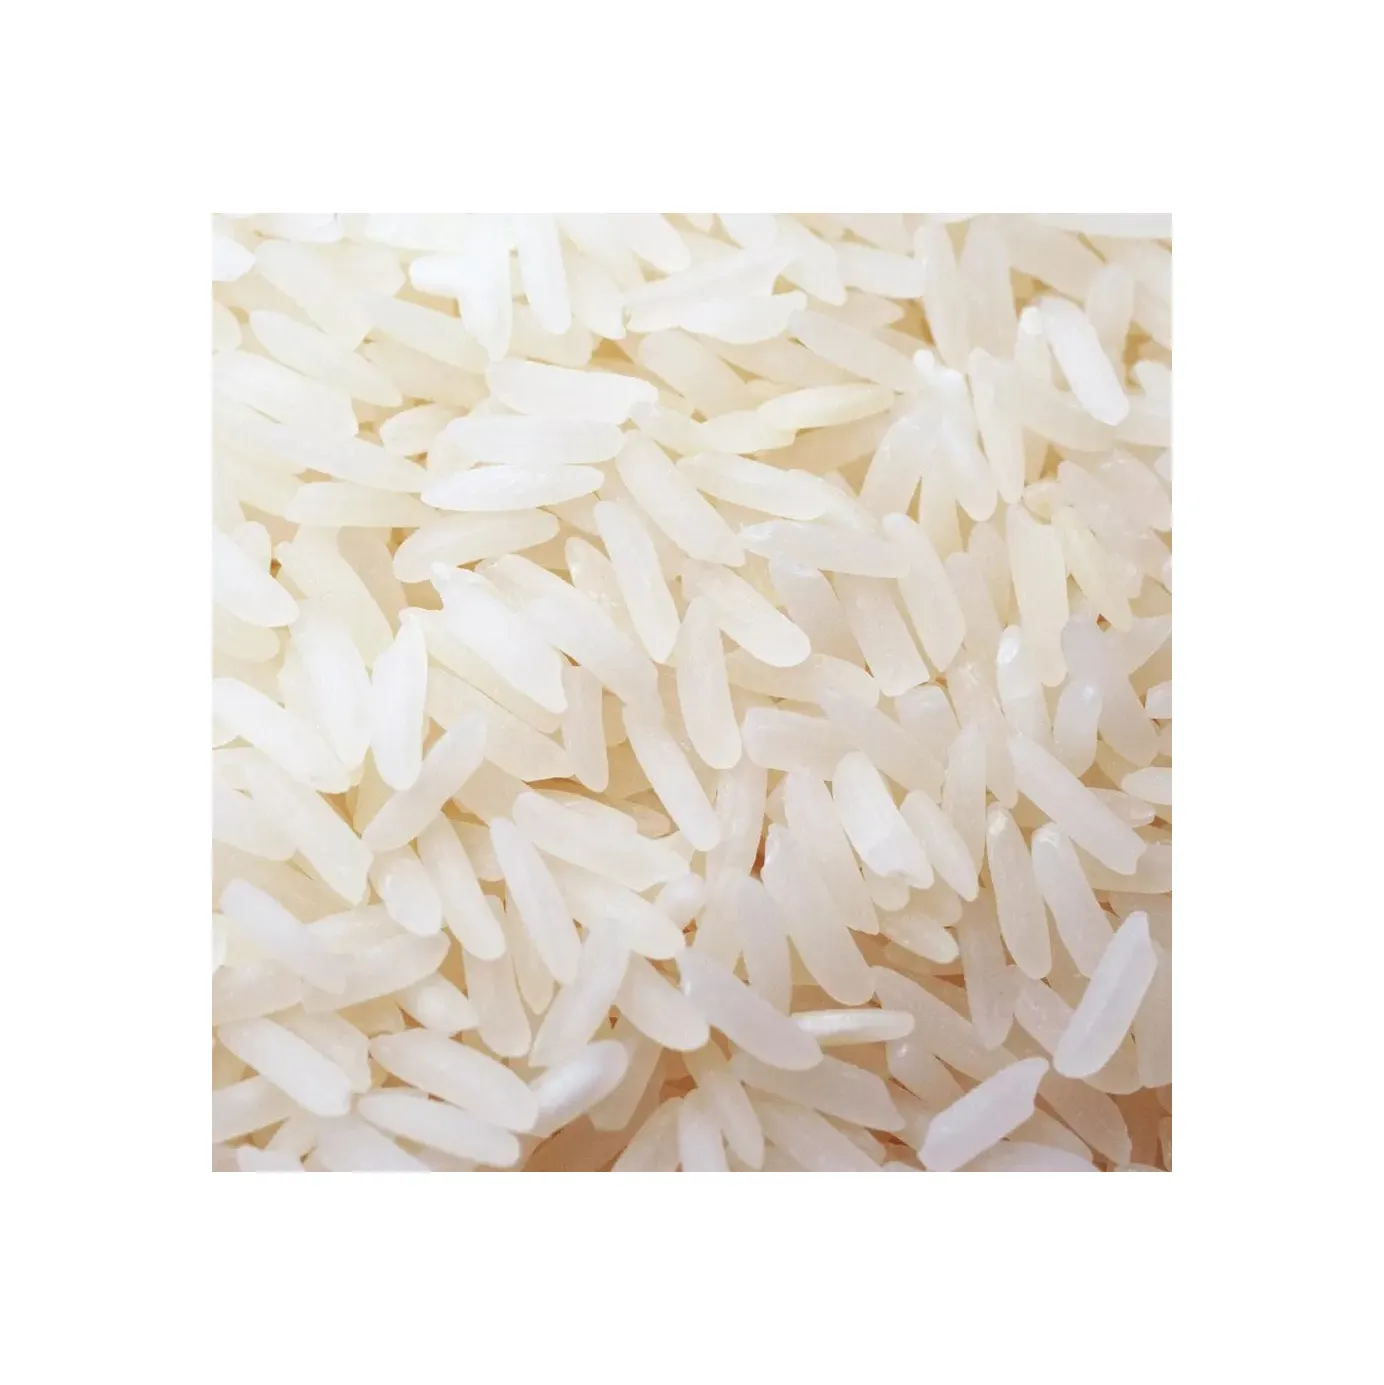 Arroz de grano largo orgánico de calidad superior al mejor precio Producto saludable Arroz de jazmín blanco de grano largo 5% Roto Alta calidad pro